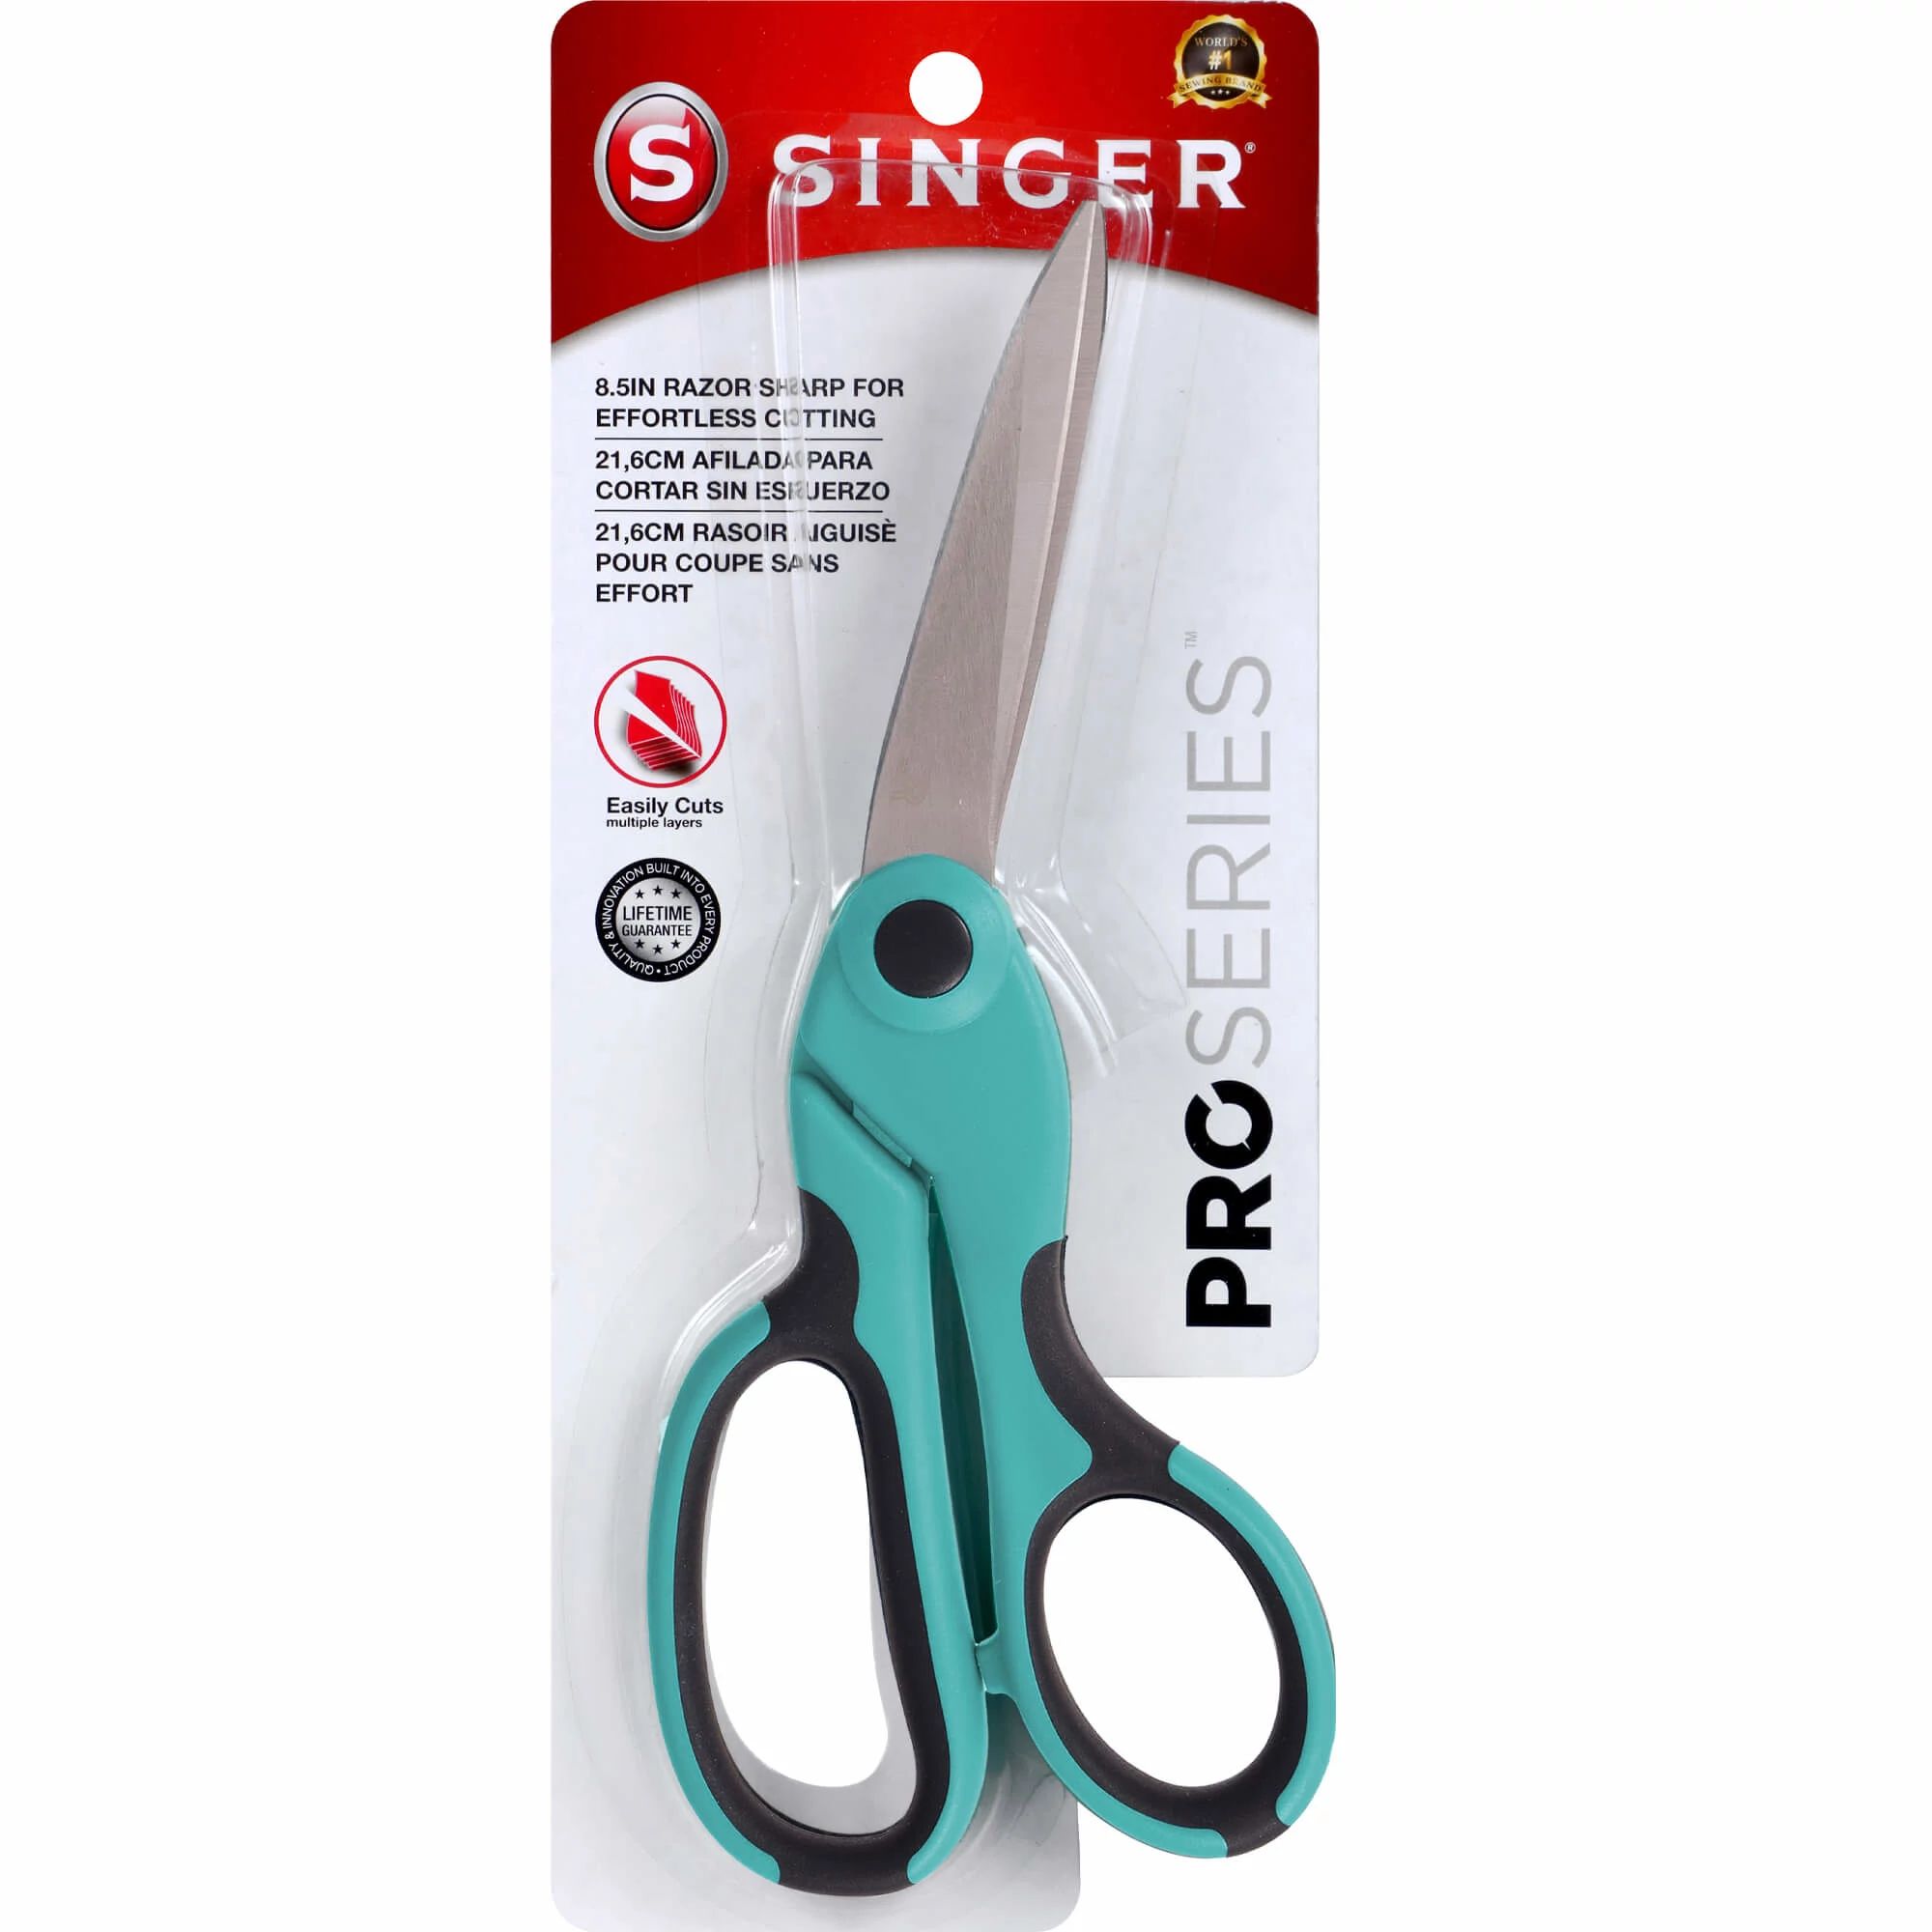 Singer Scissors